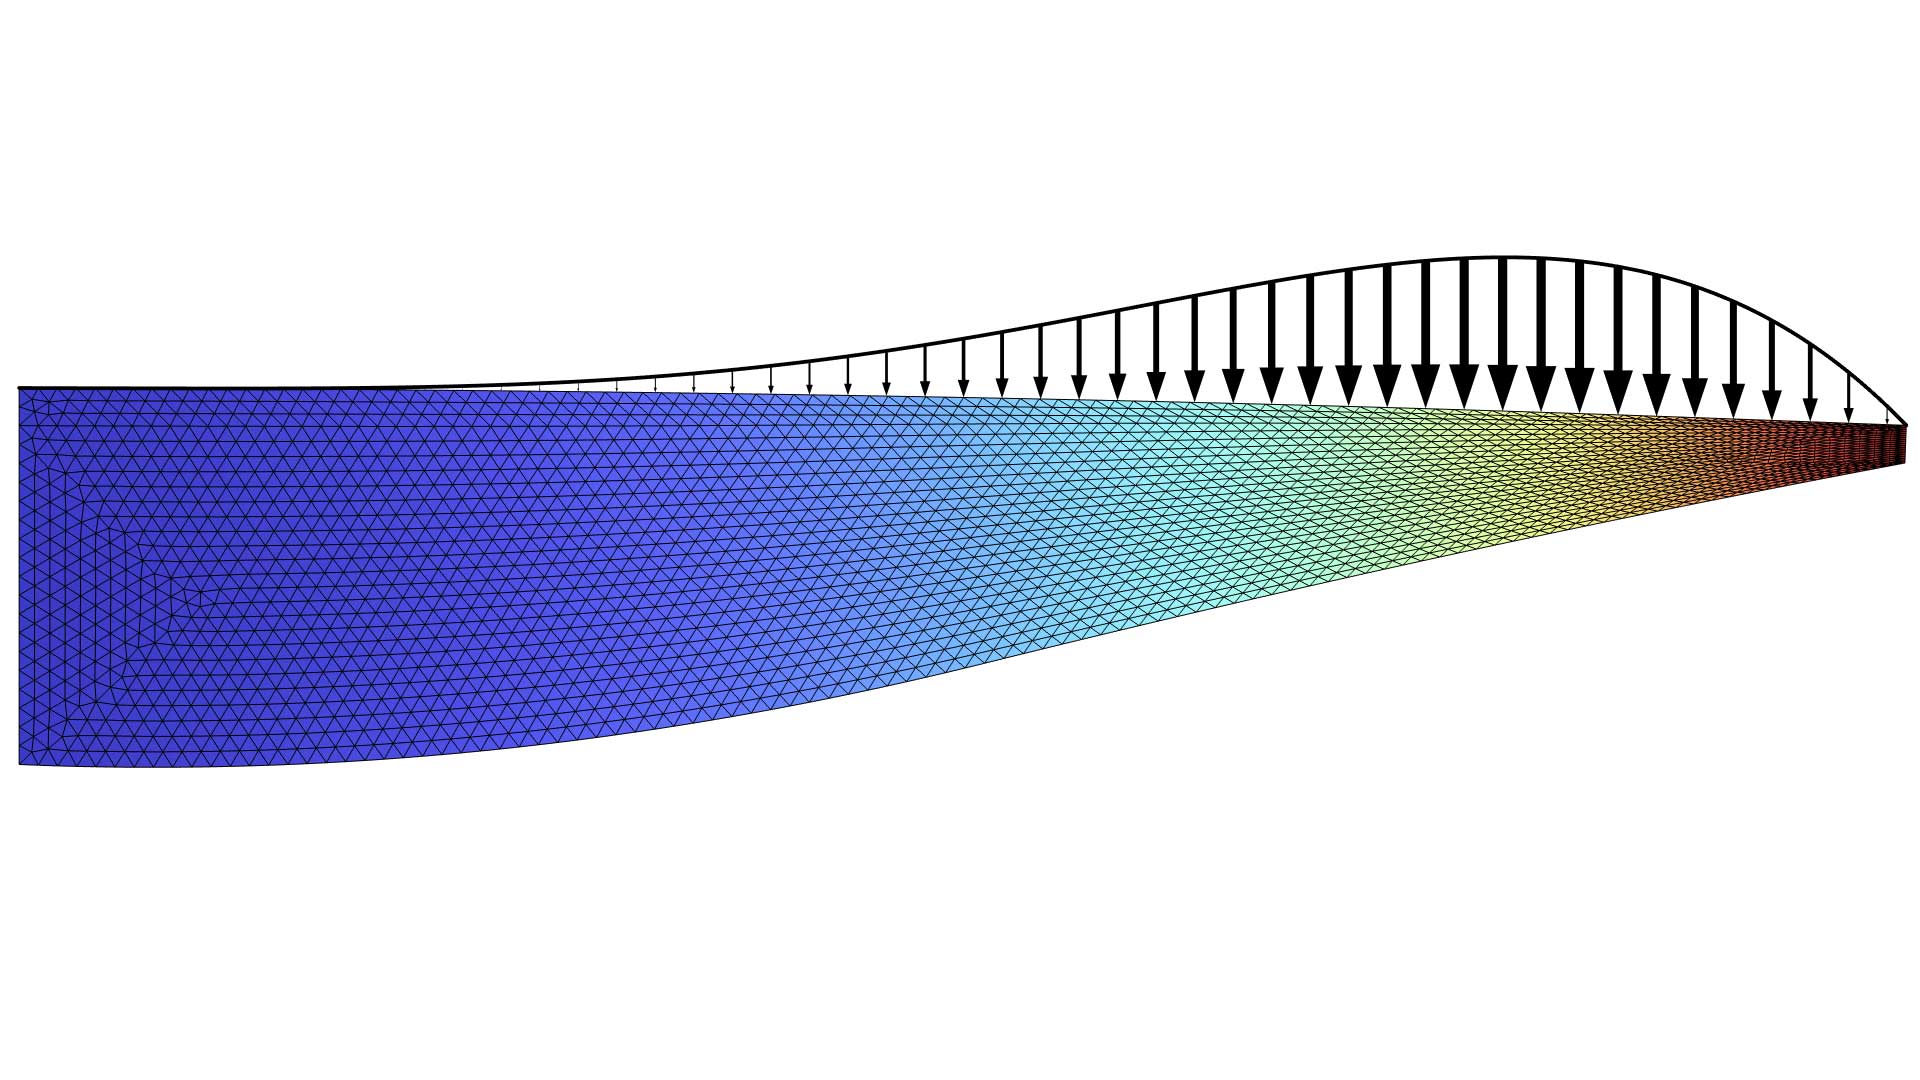 以 Rainbow Light 颜色表显示的曲梁模型，其中带有黑色箭头。